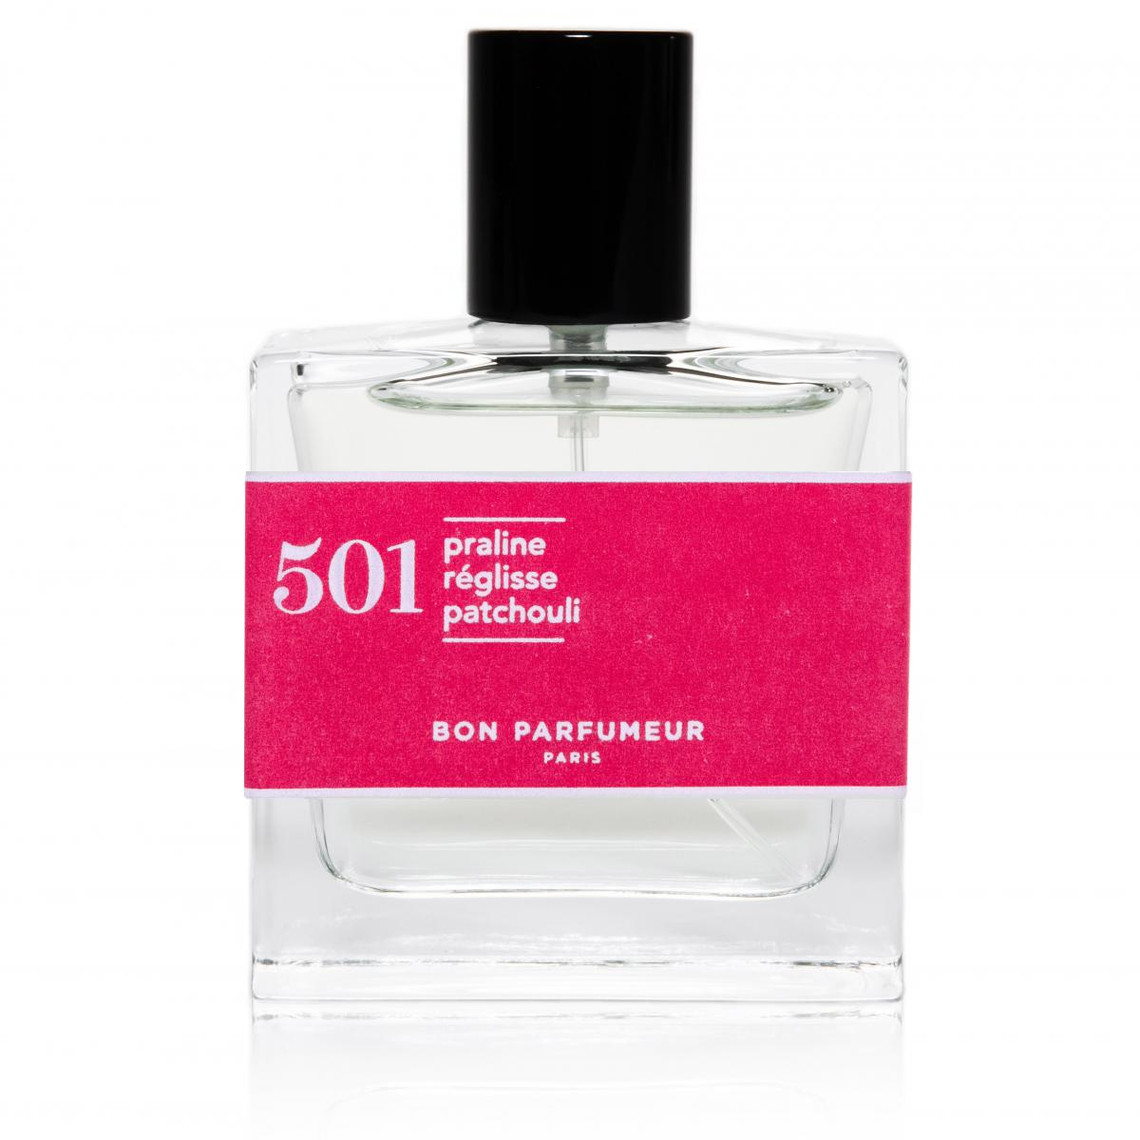 N°501 Praline Réglisse Patchouli Eau de Parfum